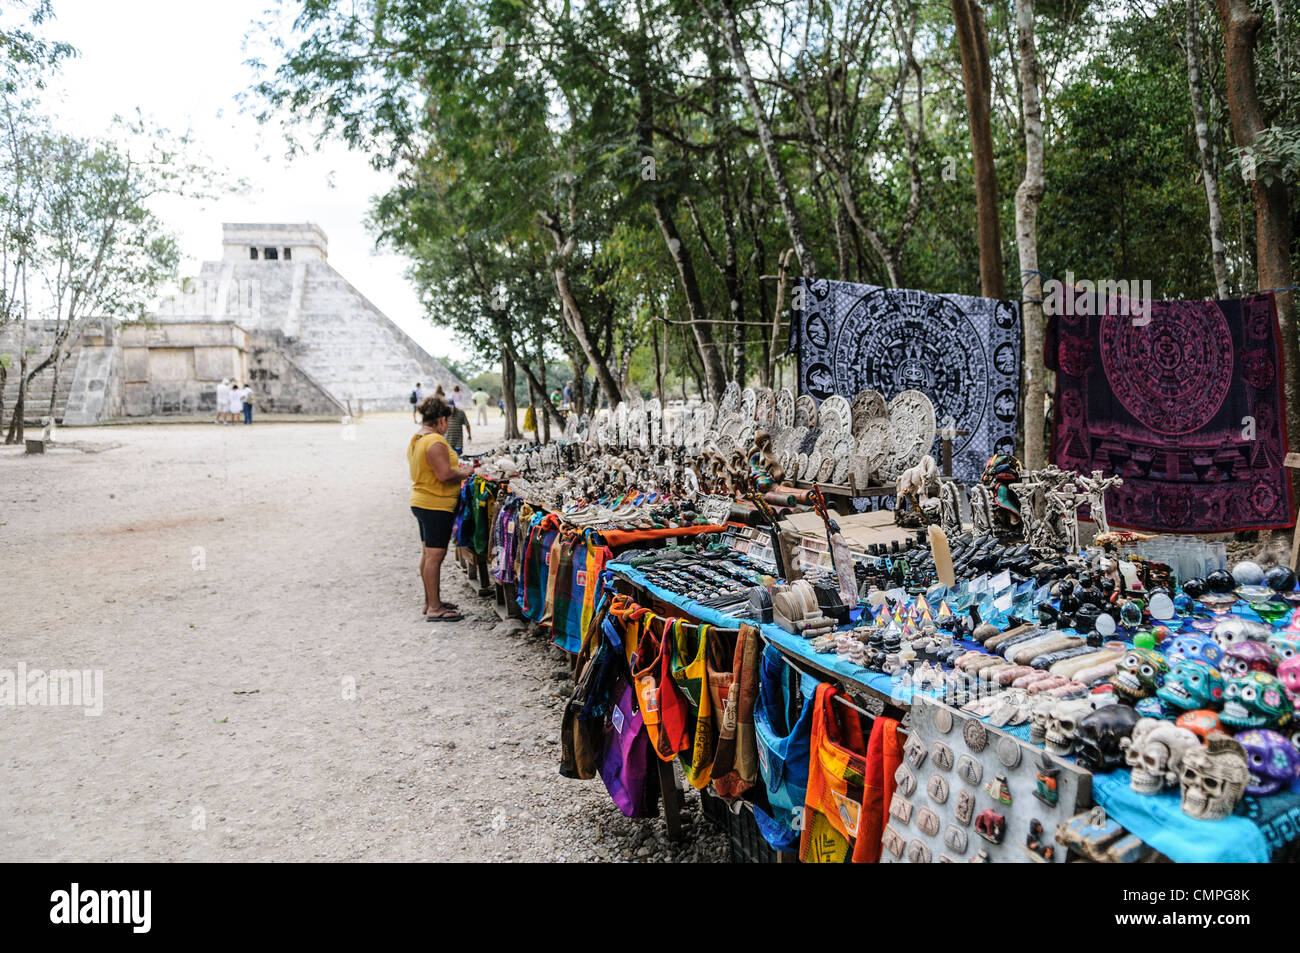 CHICHEN ITZA, Mexiko - Verkaufsstände mit lokalen Souvenirs und Kunsthandwerk, die Touristen in Chichen Itza Maya Ruinen archäologische Stätte in Mexiko. El Castilla ist im Hintergrund. Stockfoto